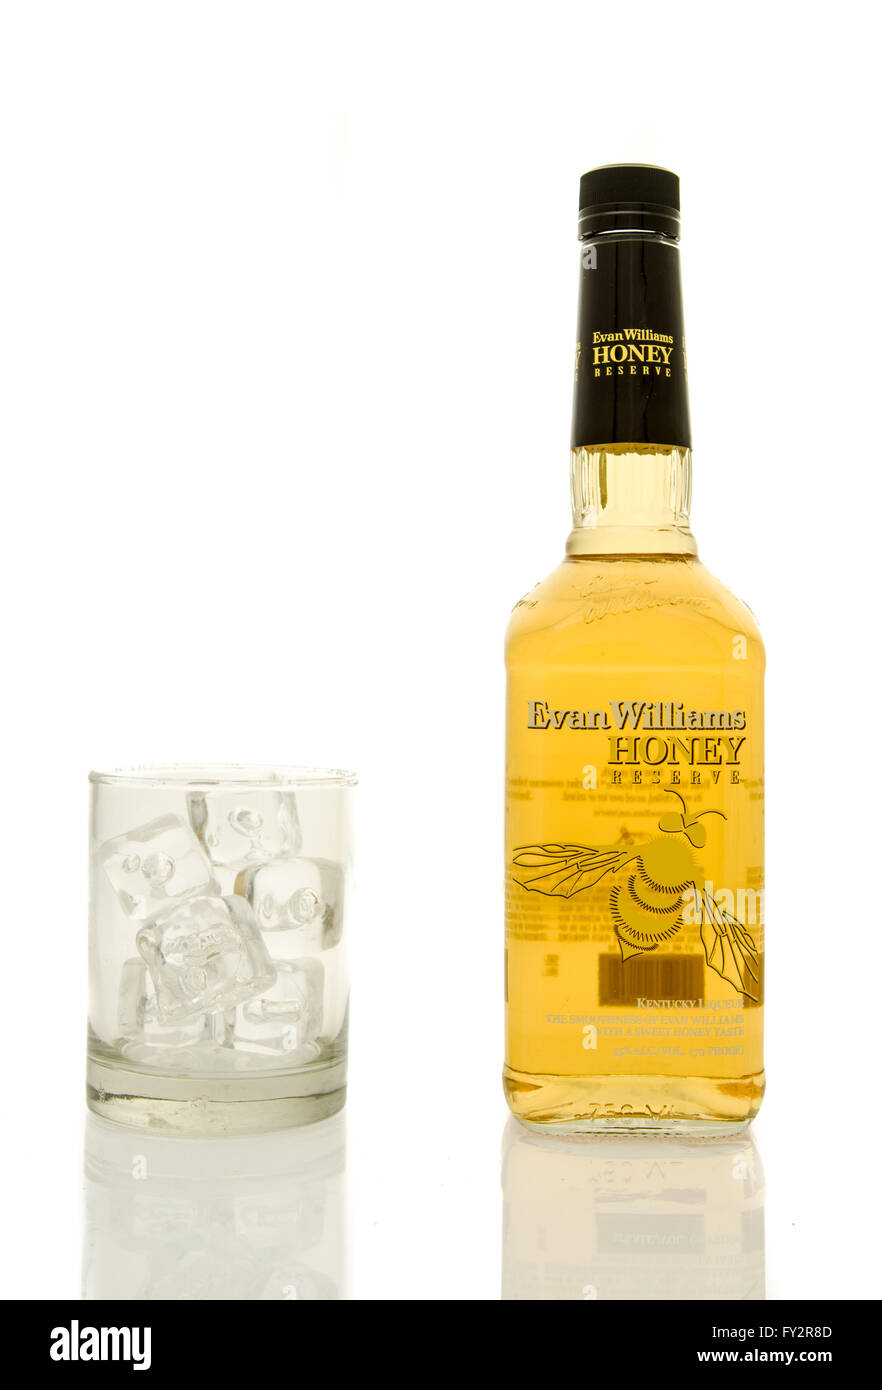 Winneconne, WI - 19 mars 2016 : une bouteille de whisky Evan Williams réserve miel avec un verre de glace. Banque D'Images